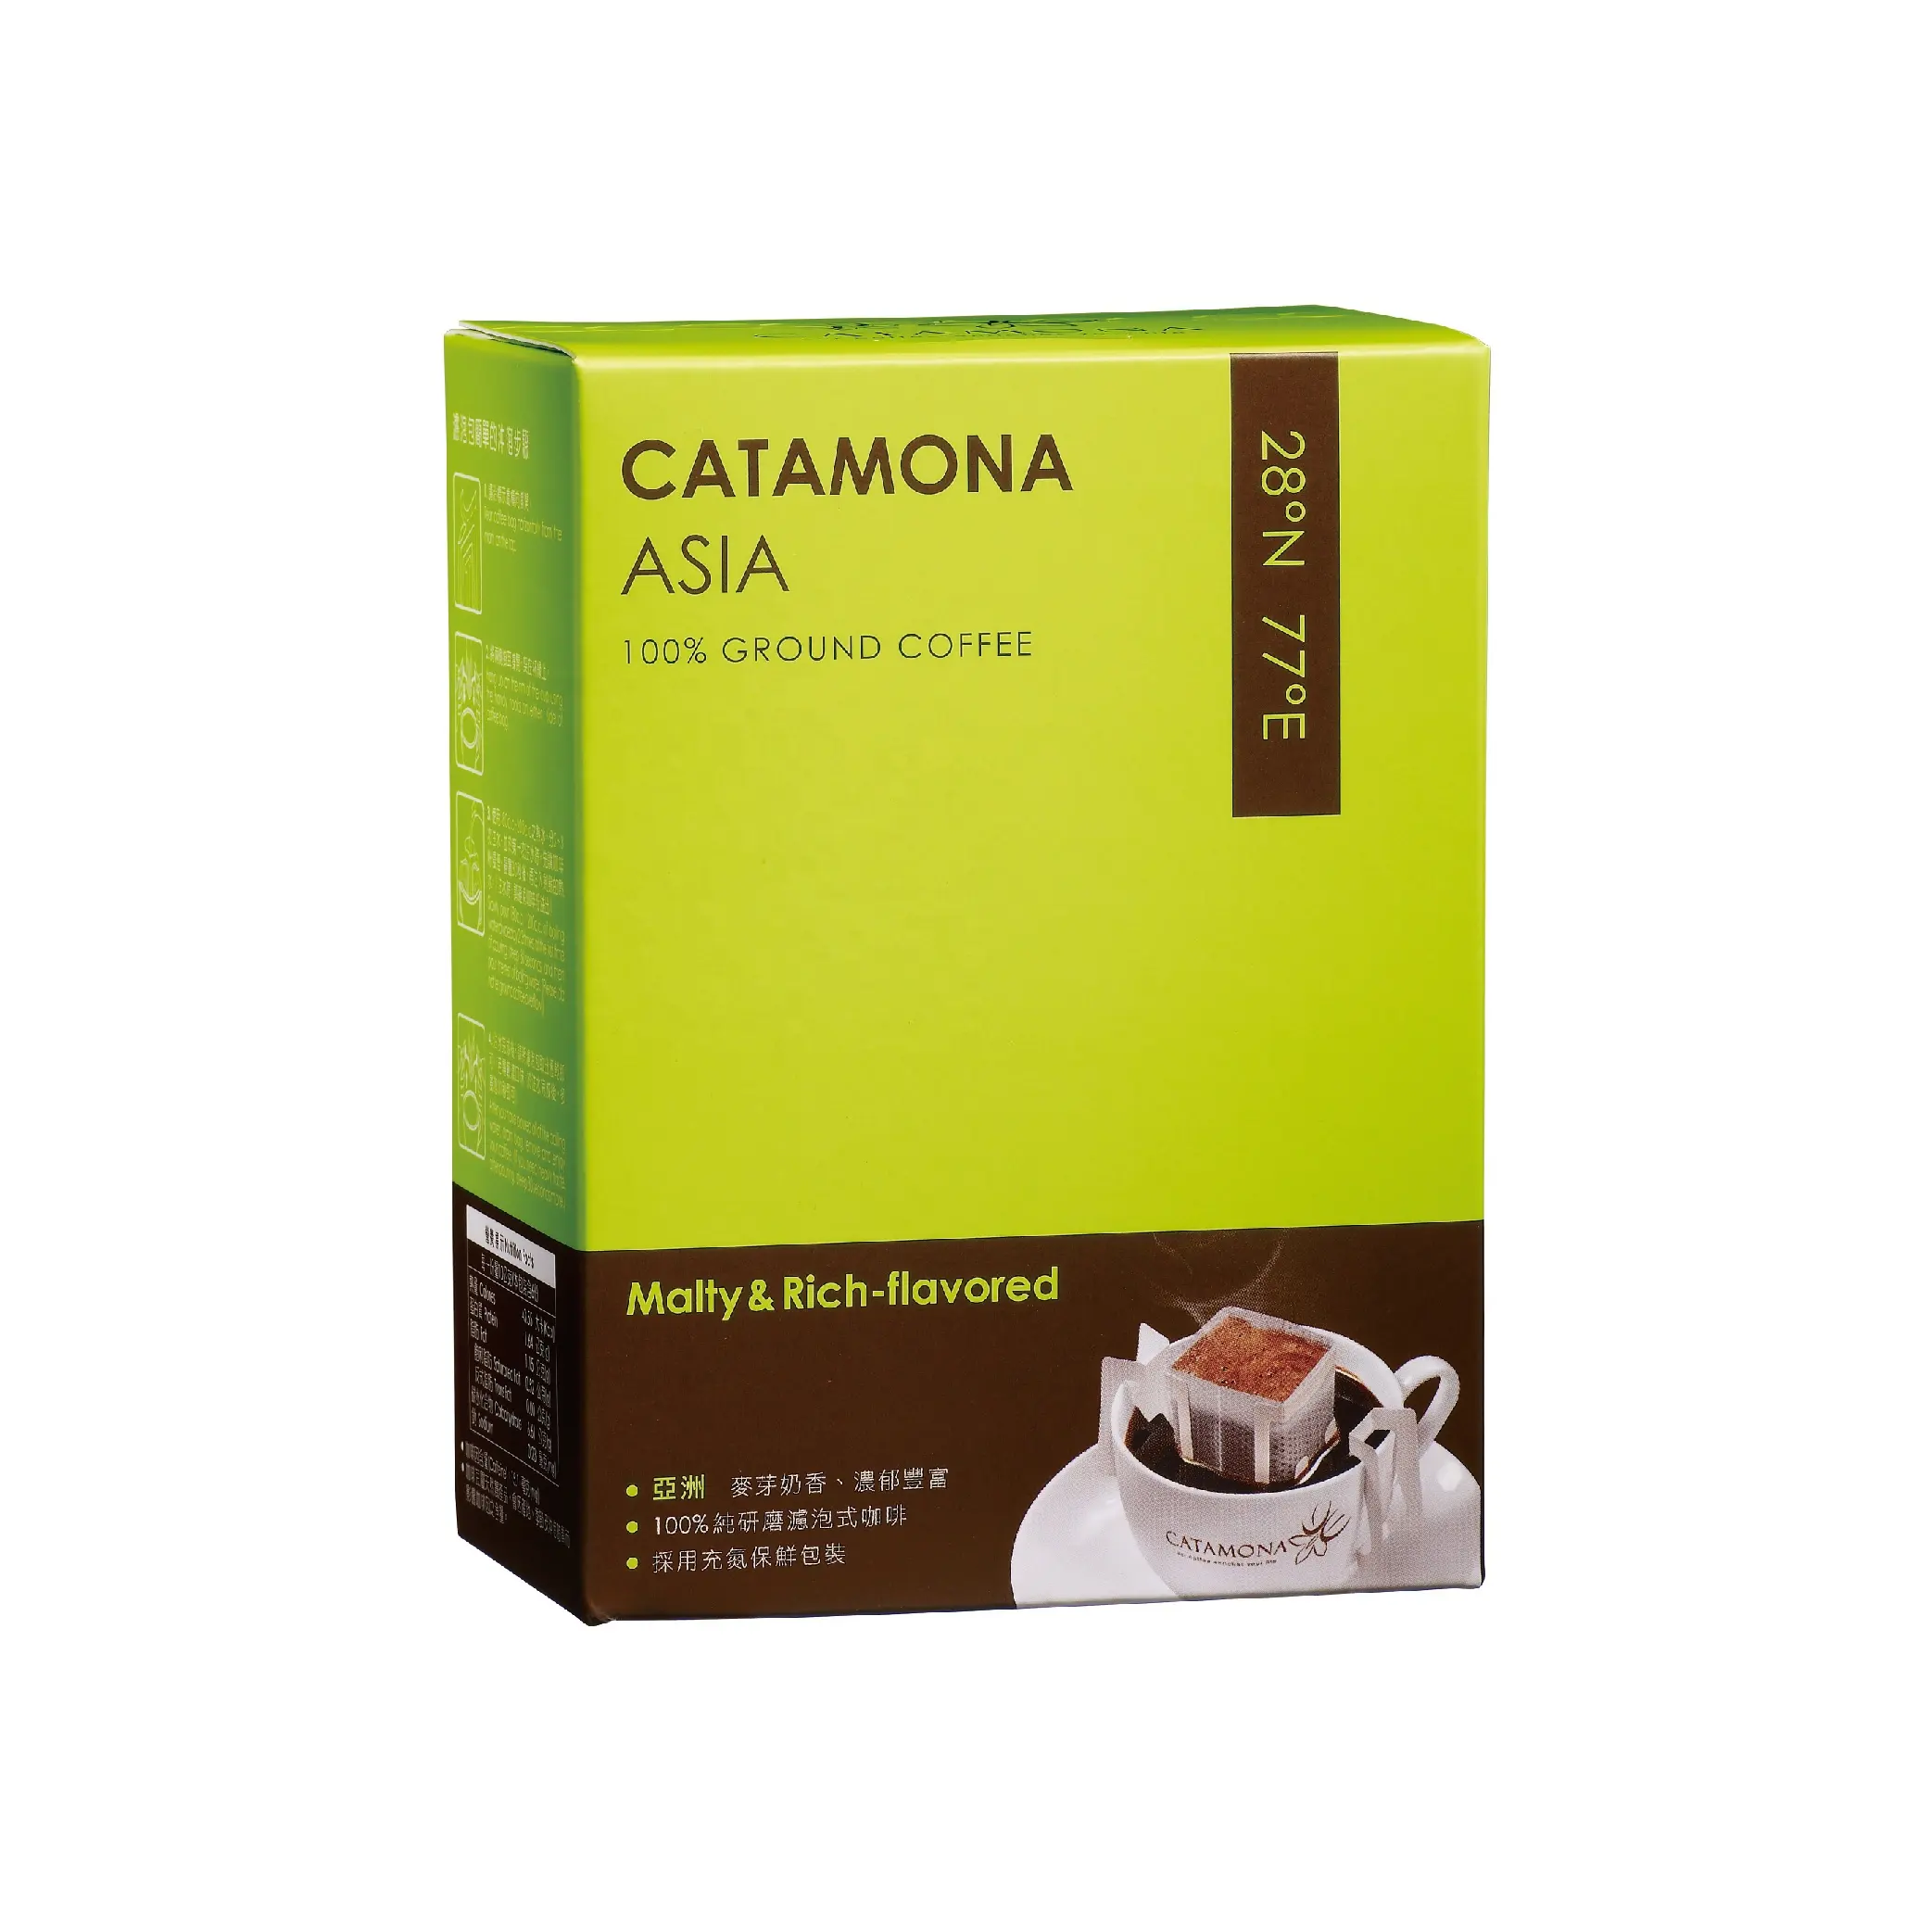 CATAMONA Steady Green Drip Coffee Bag Ground Coffee